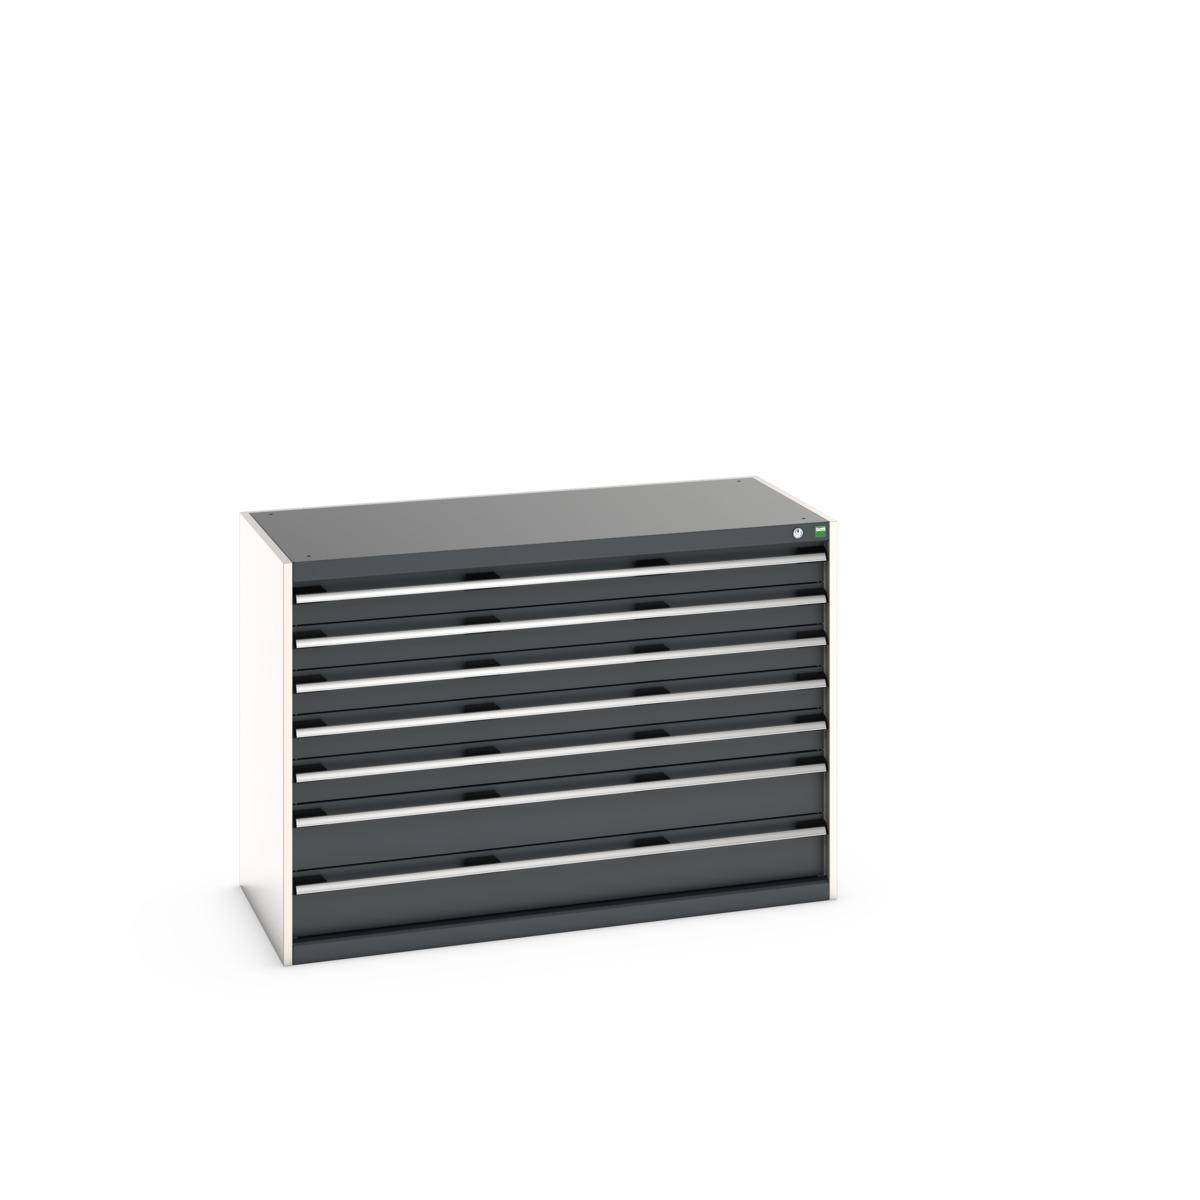 40022118.19V - cubio drawer cabinet